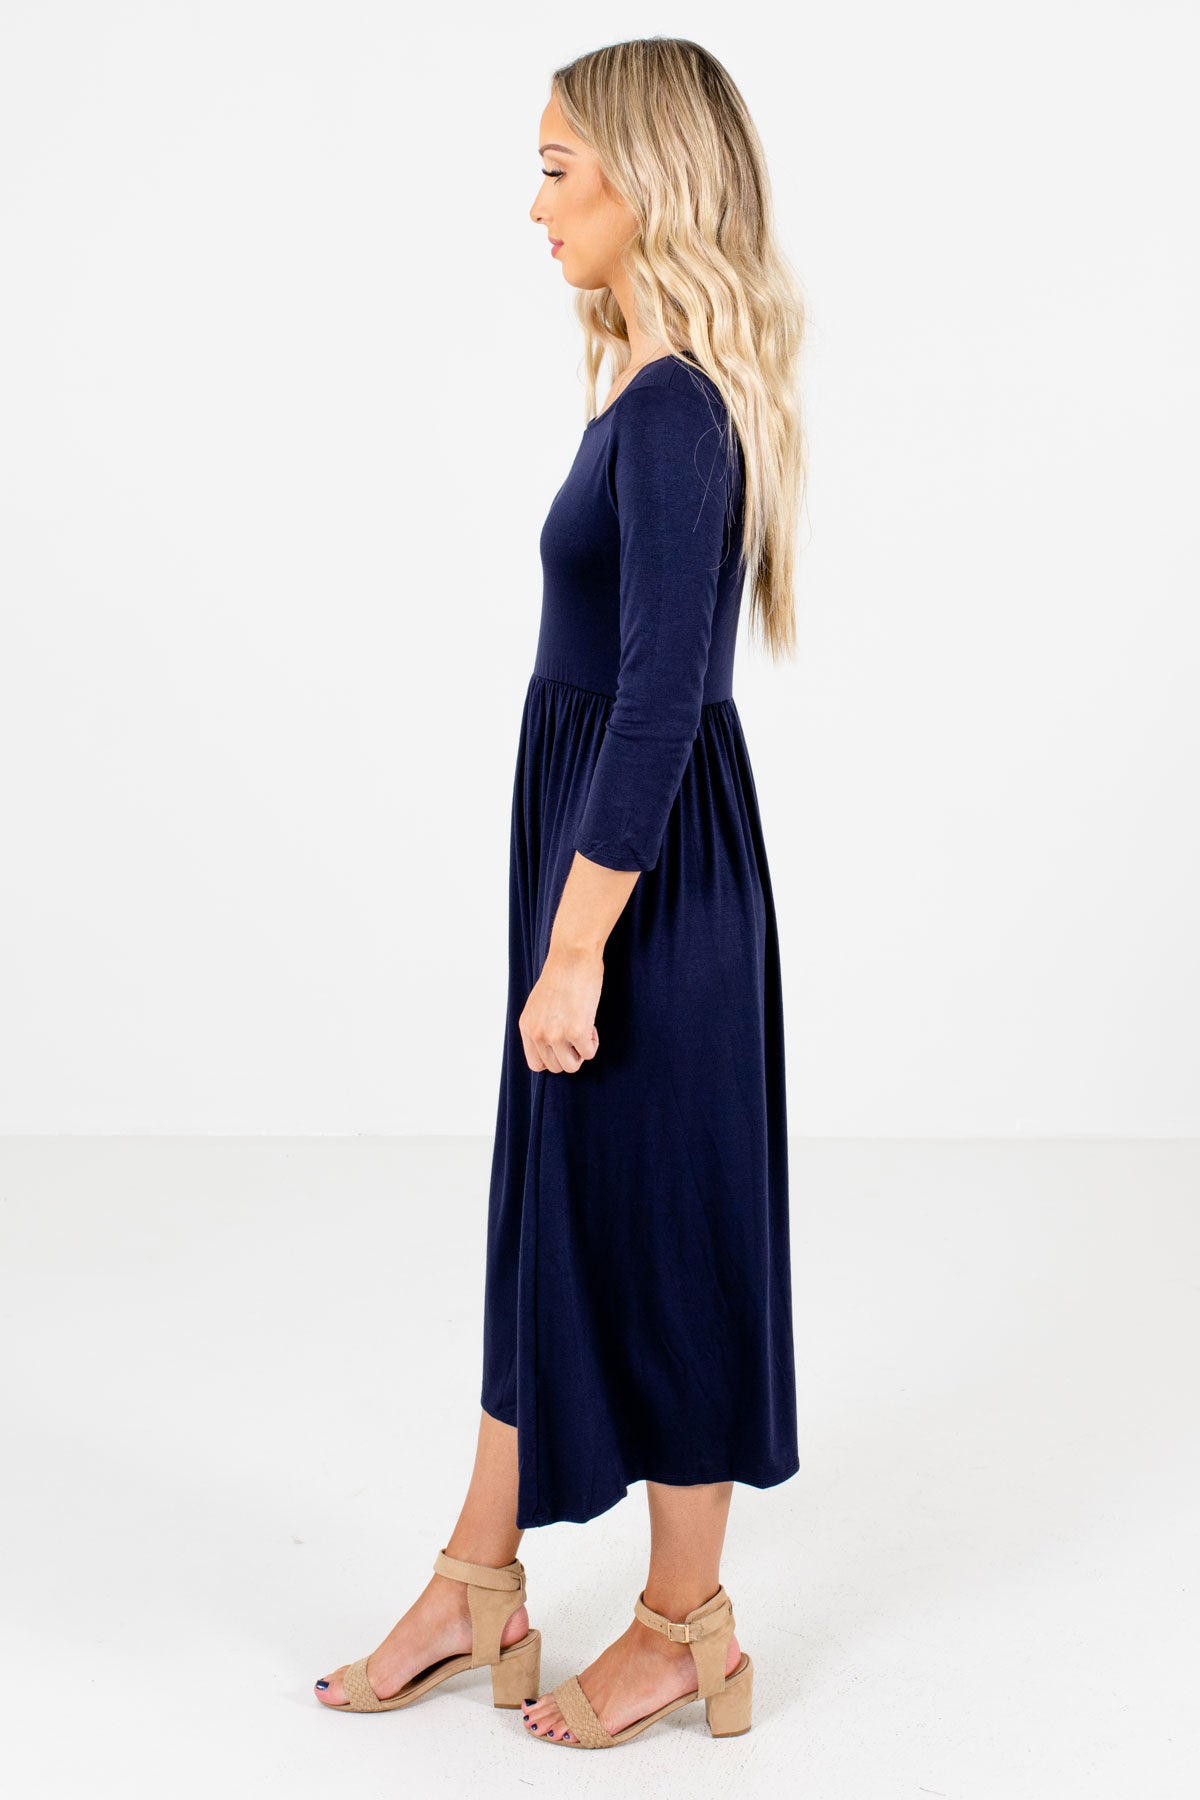 Women’s Navy Blue Round Neckline Boutique Midi Dress